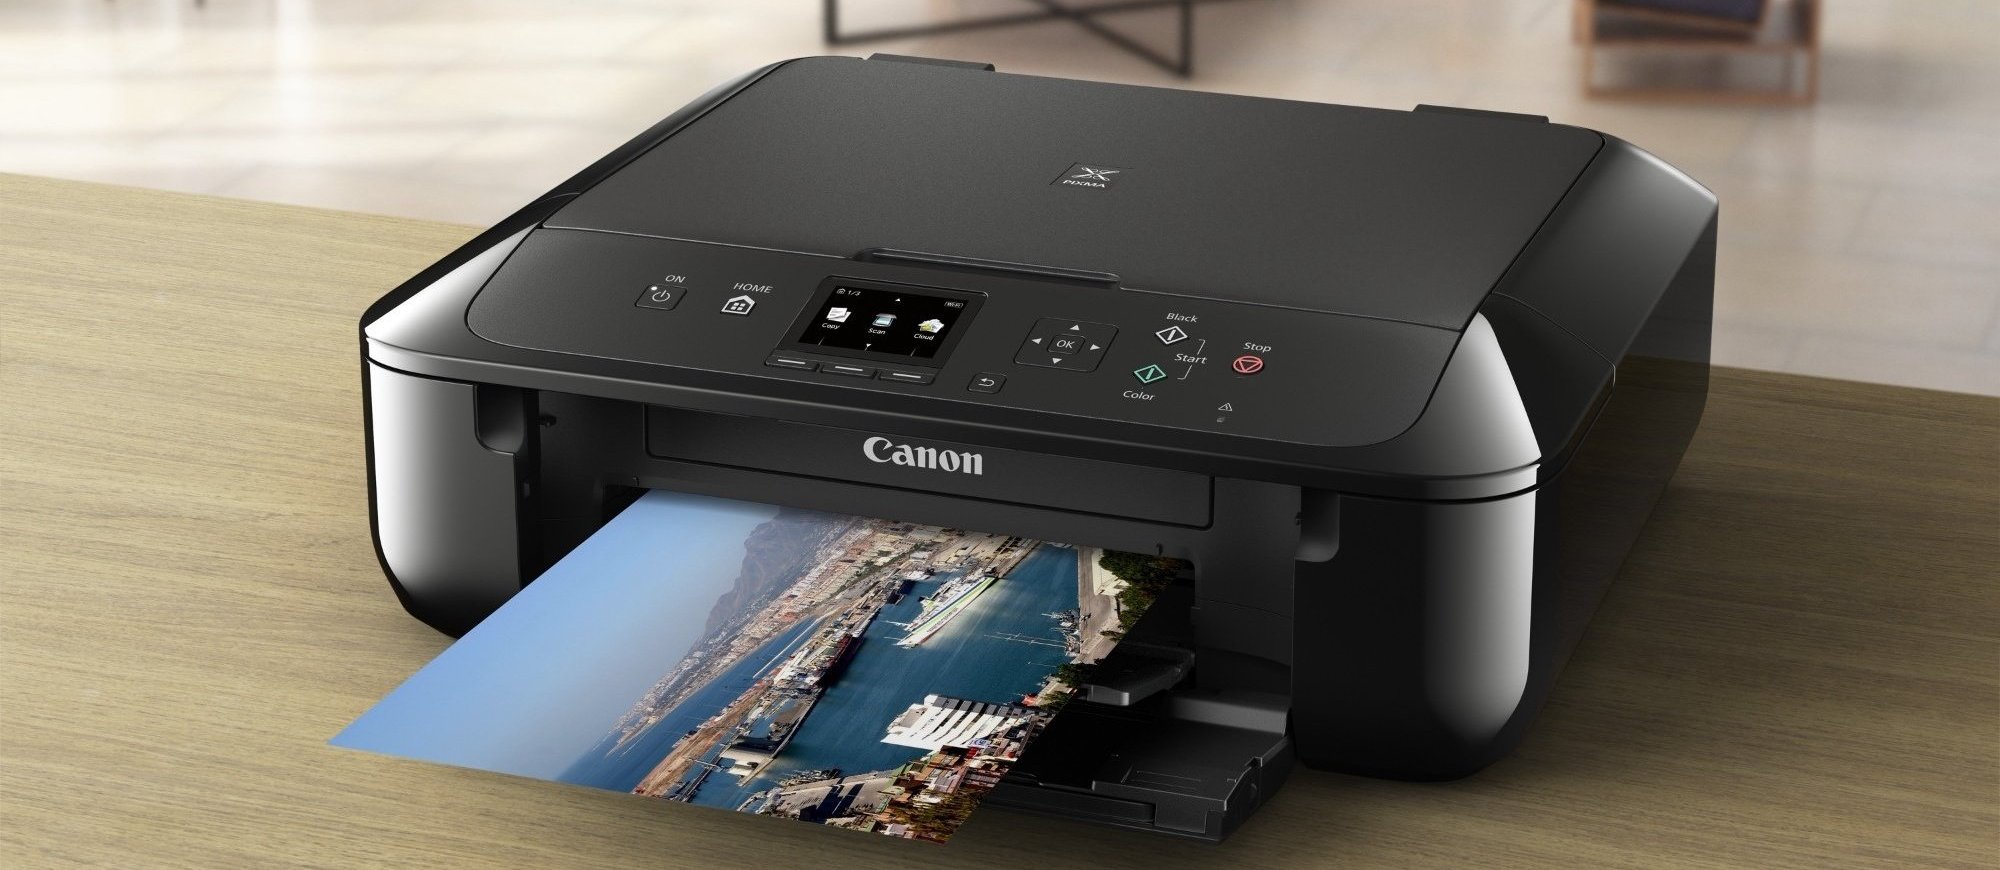 Canon Printer 2017